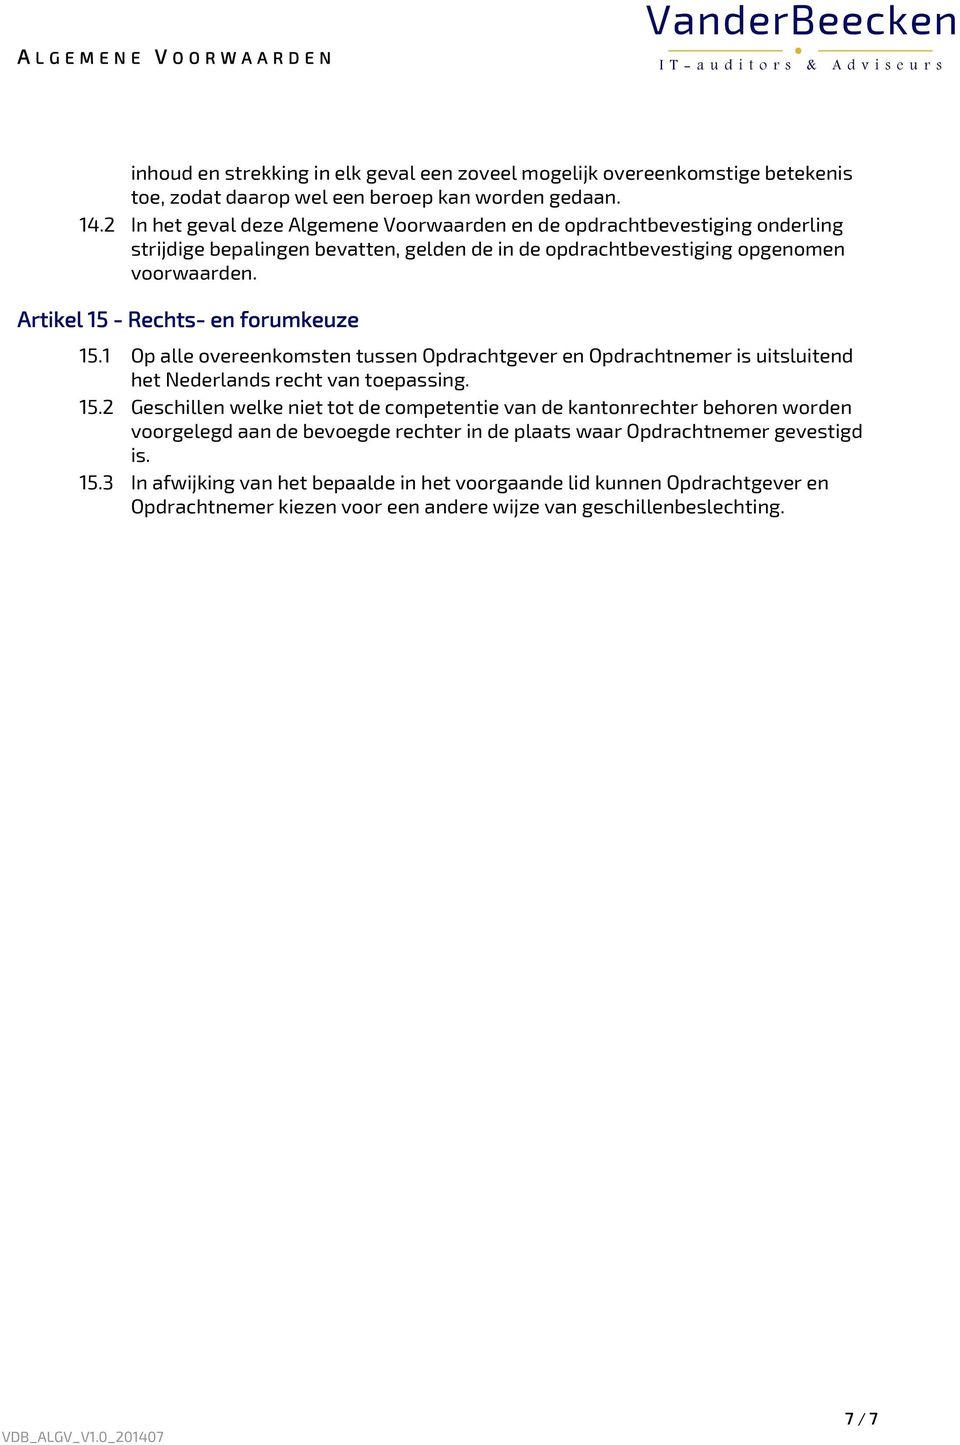 Artikel 15 - Rechts- en forumkeuze 15.1 Op alle overeenkomsten tussen Opdrachtgever en Opdrachtnemer is uitsluitend het Nederlands recht van toepassing. 15.2 Geschillen welke niet tot de competentie van de kantonrechter behoren worden voorgelegd aan de bevoegde rechter in de plaats waar Opdrachtnemer gevestigd is.